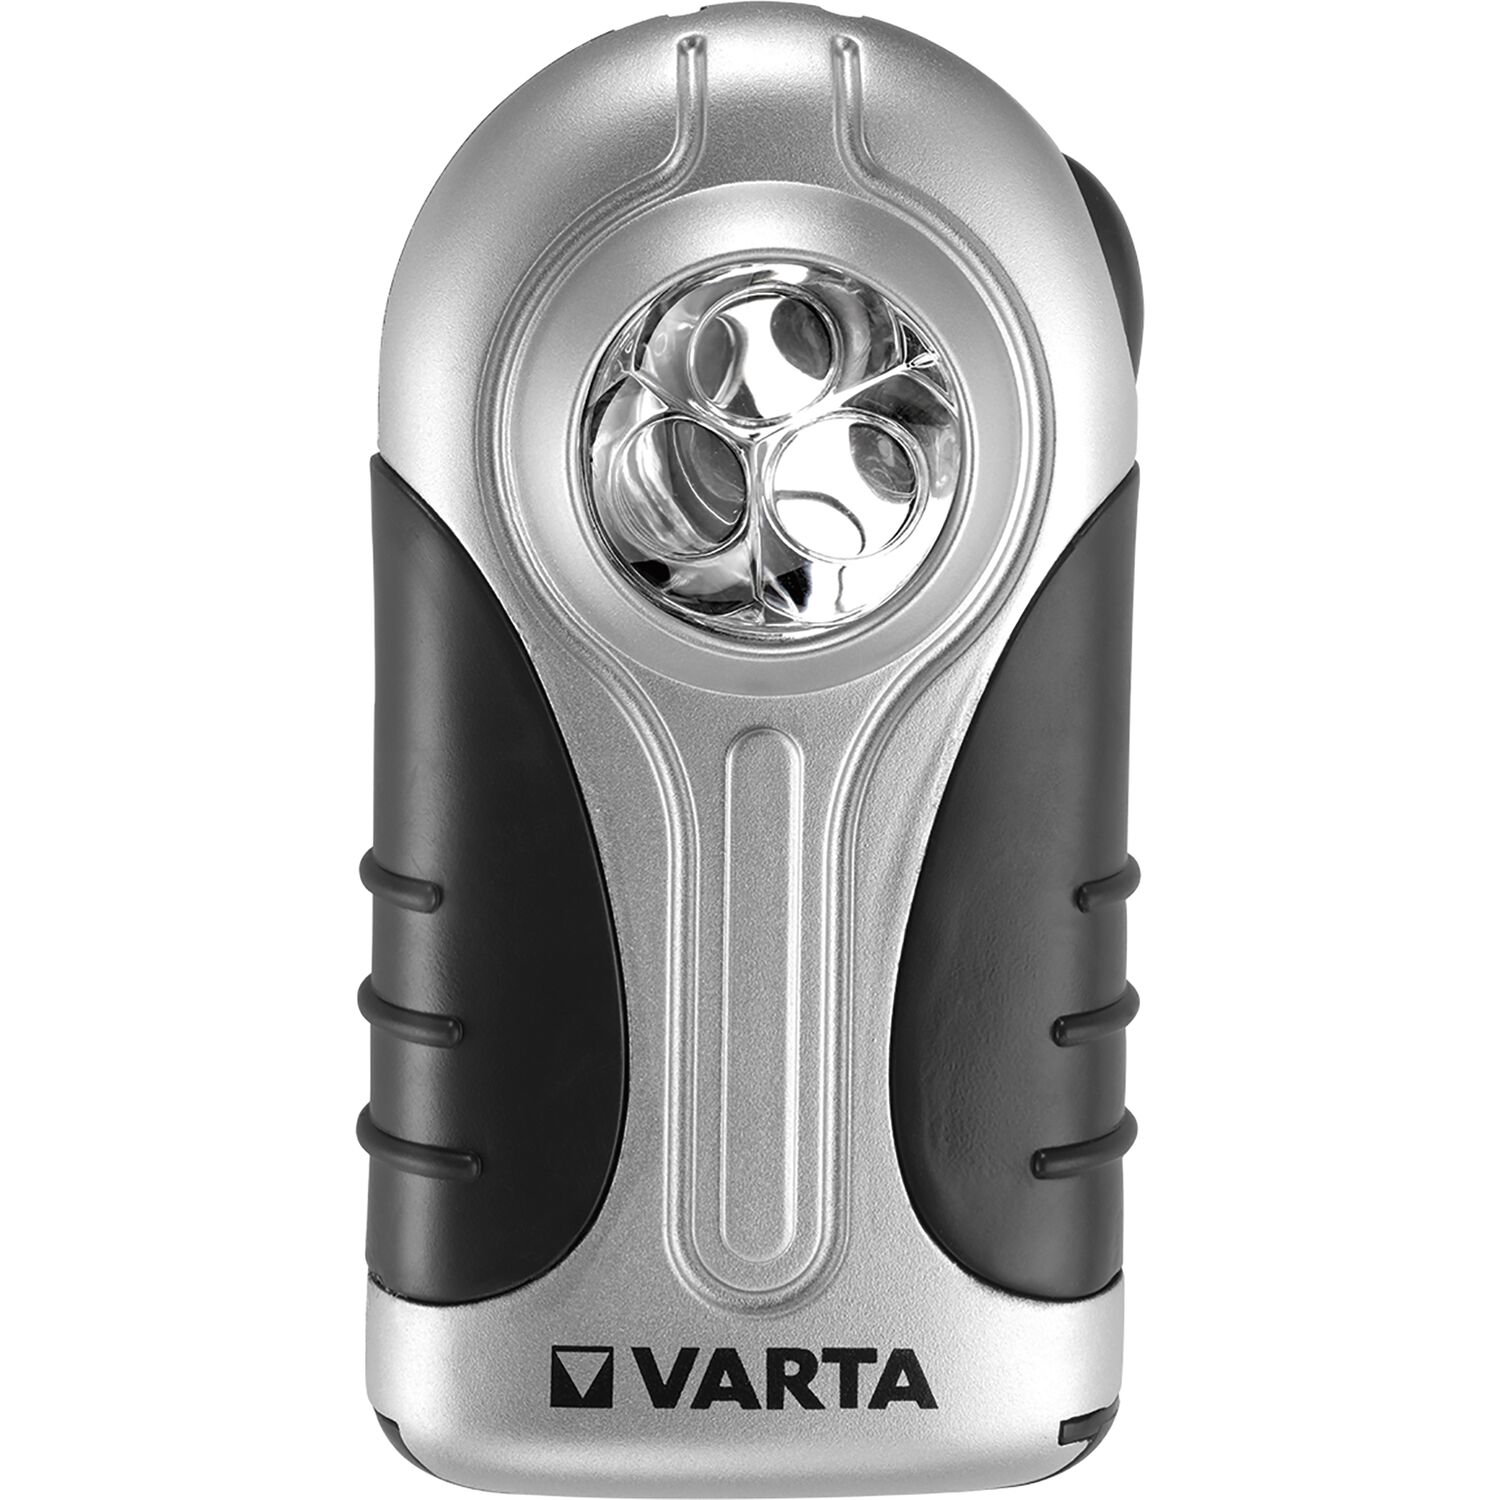 - Varta mit vasalat Taschenlampe (Flachleuchte) 3x Halteclip und LED Silver Batterien